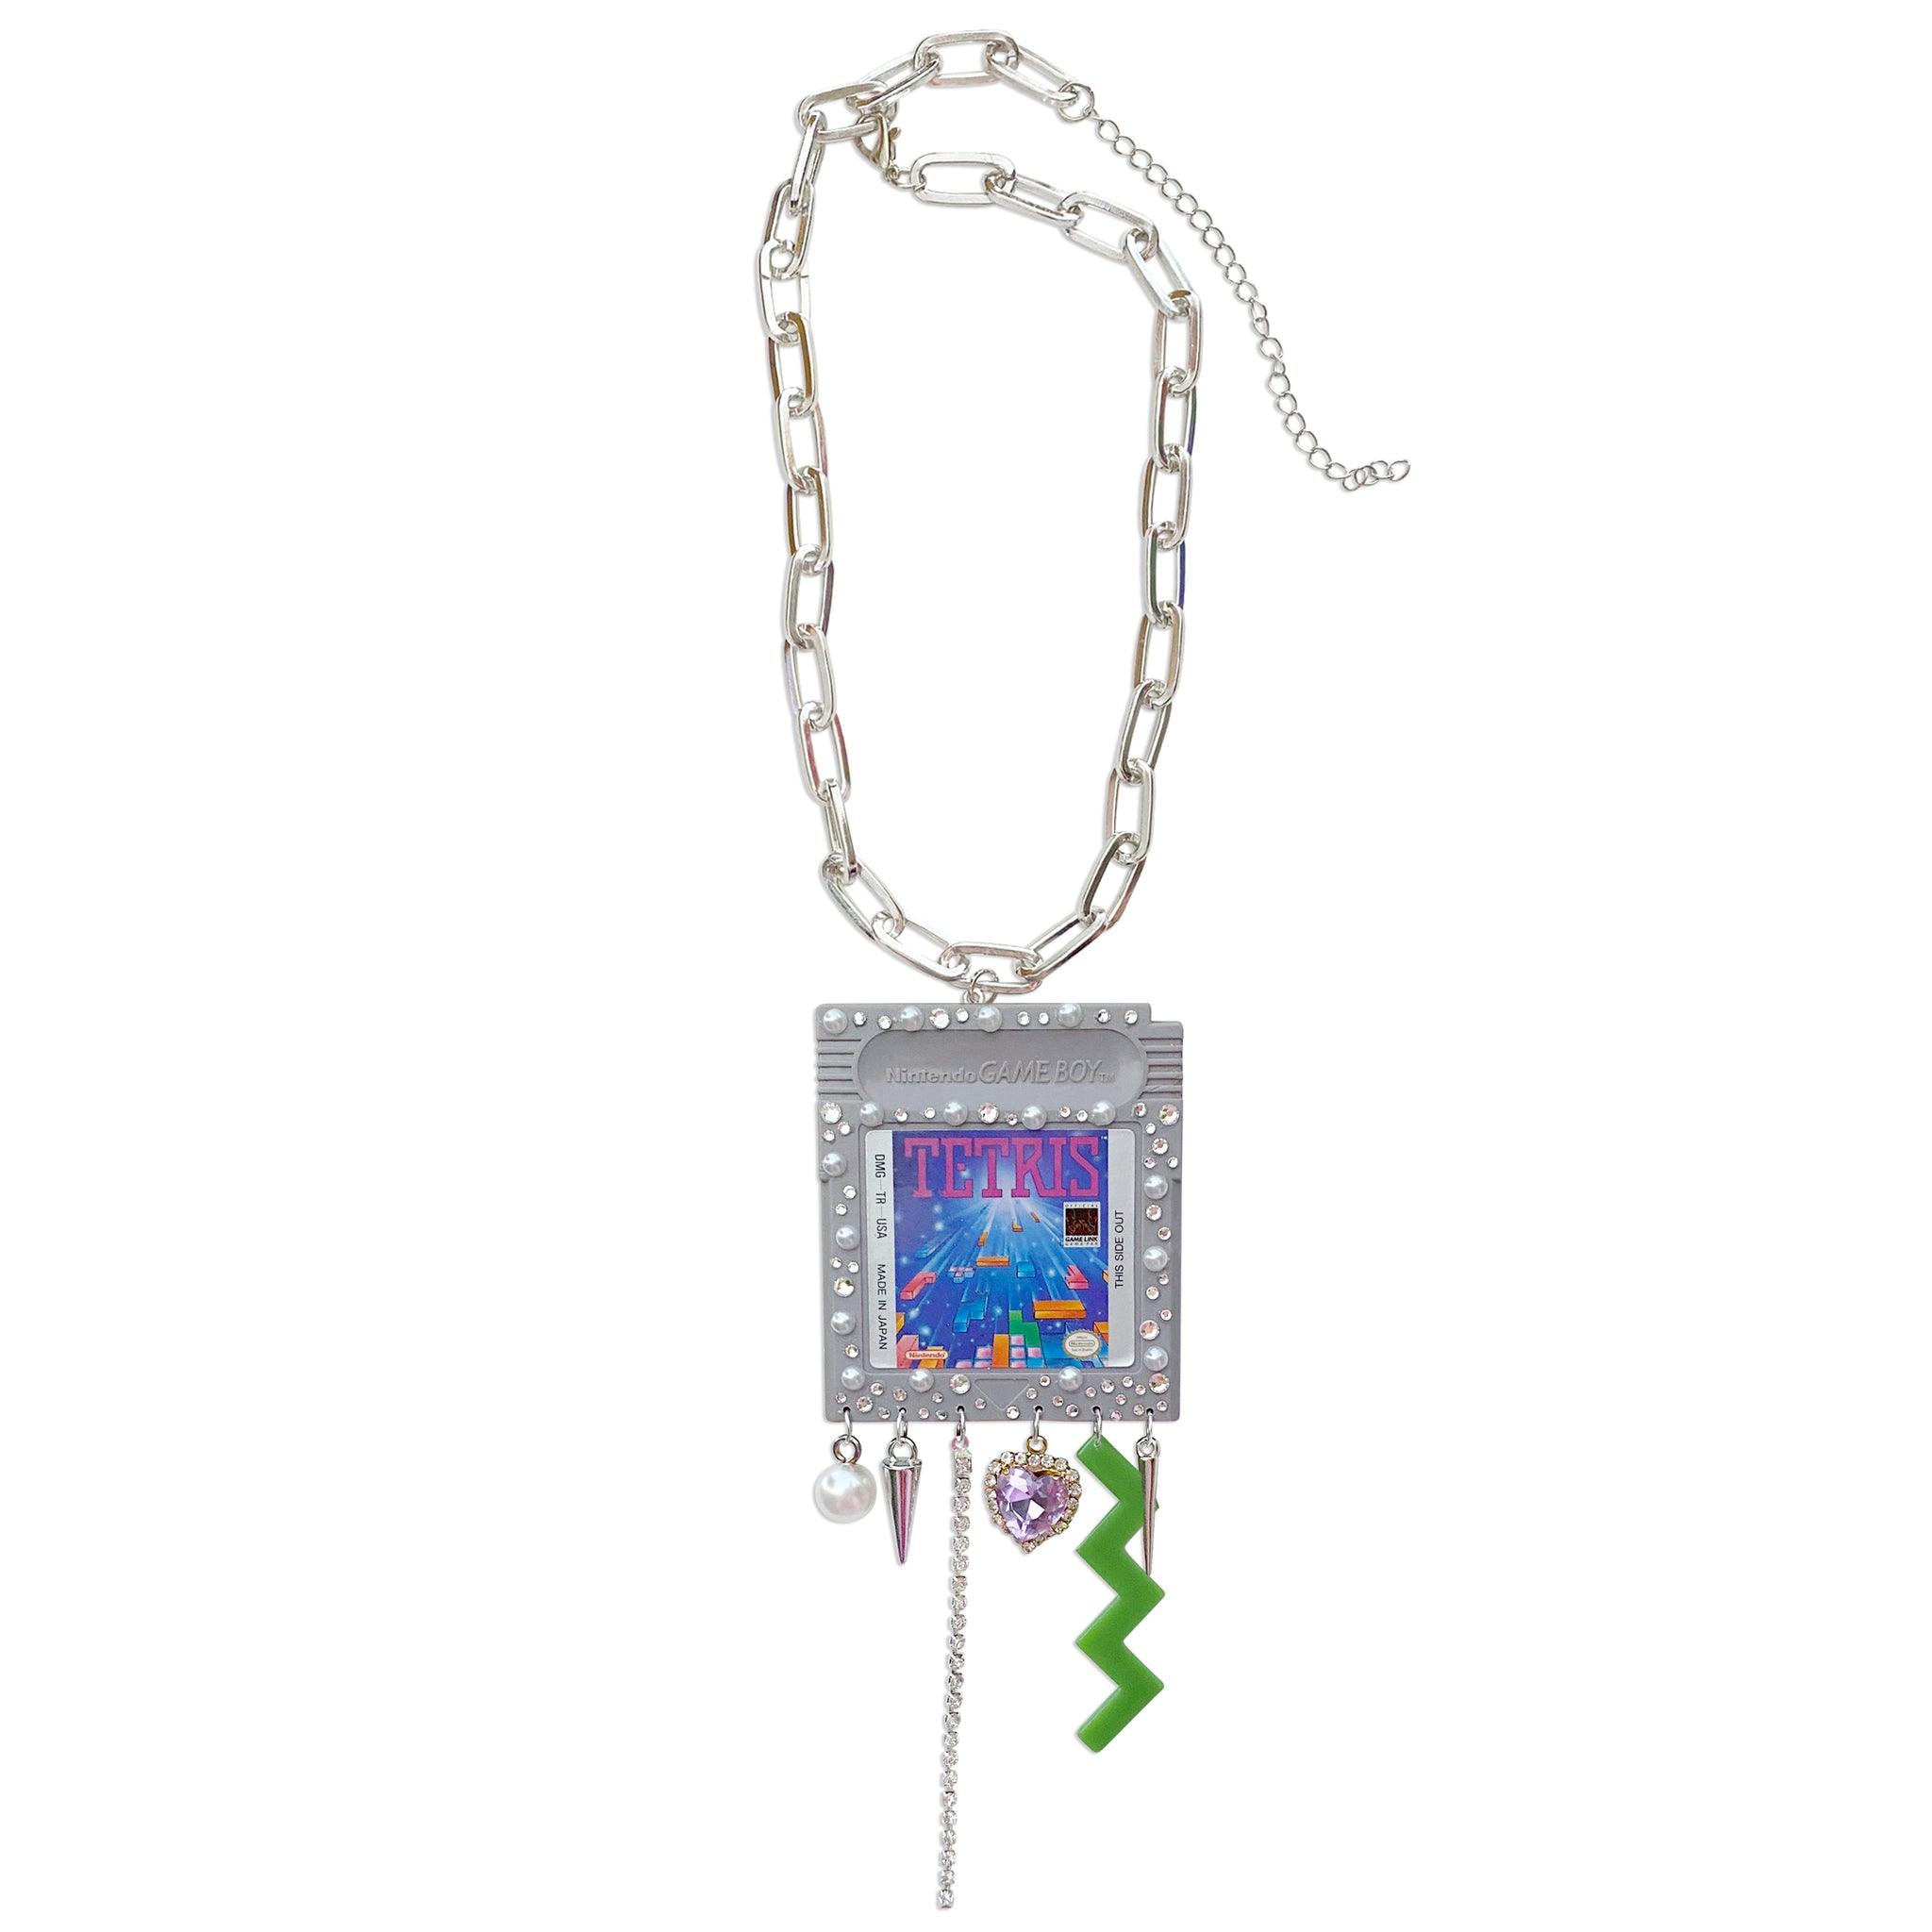 1989 Vintage Tetris Charm Necklace